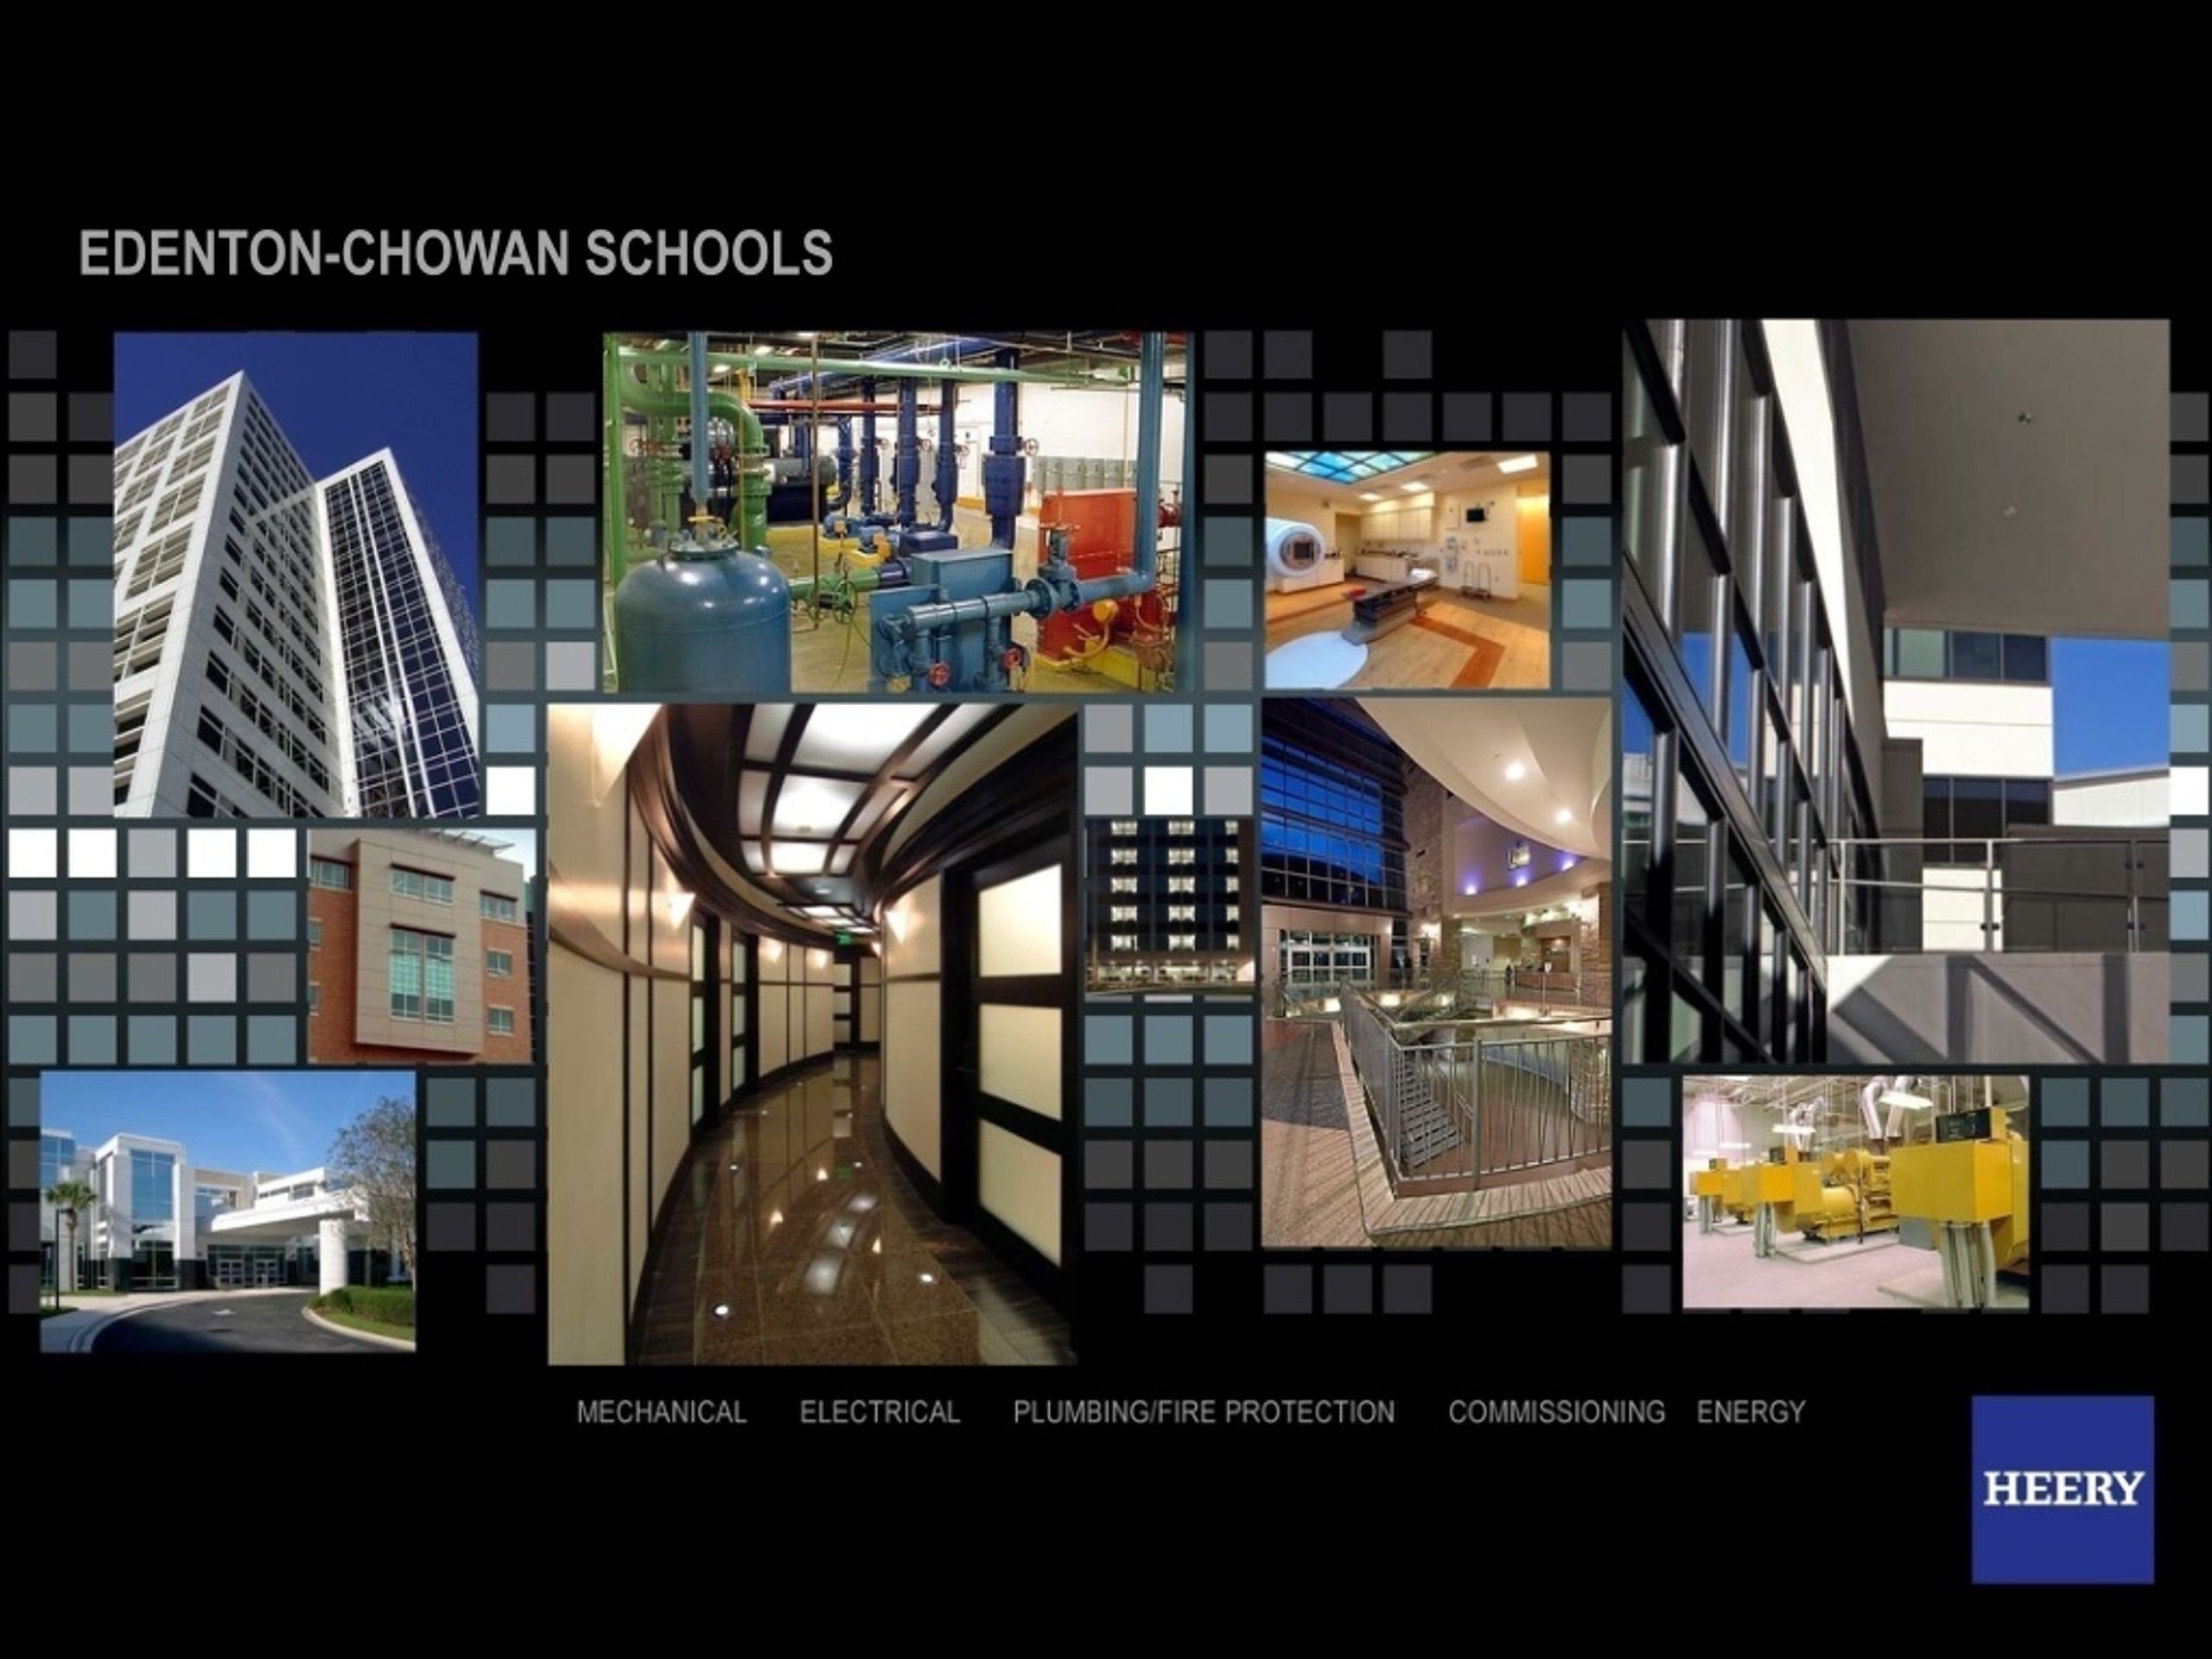 PPT EDENTON CHOWAN SCHOOLS PowerPoint Presentation free download